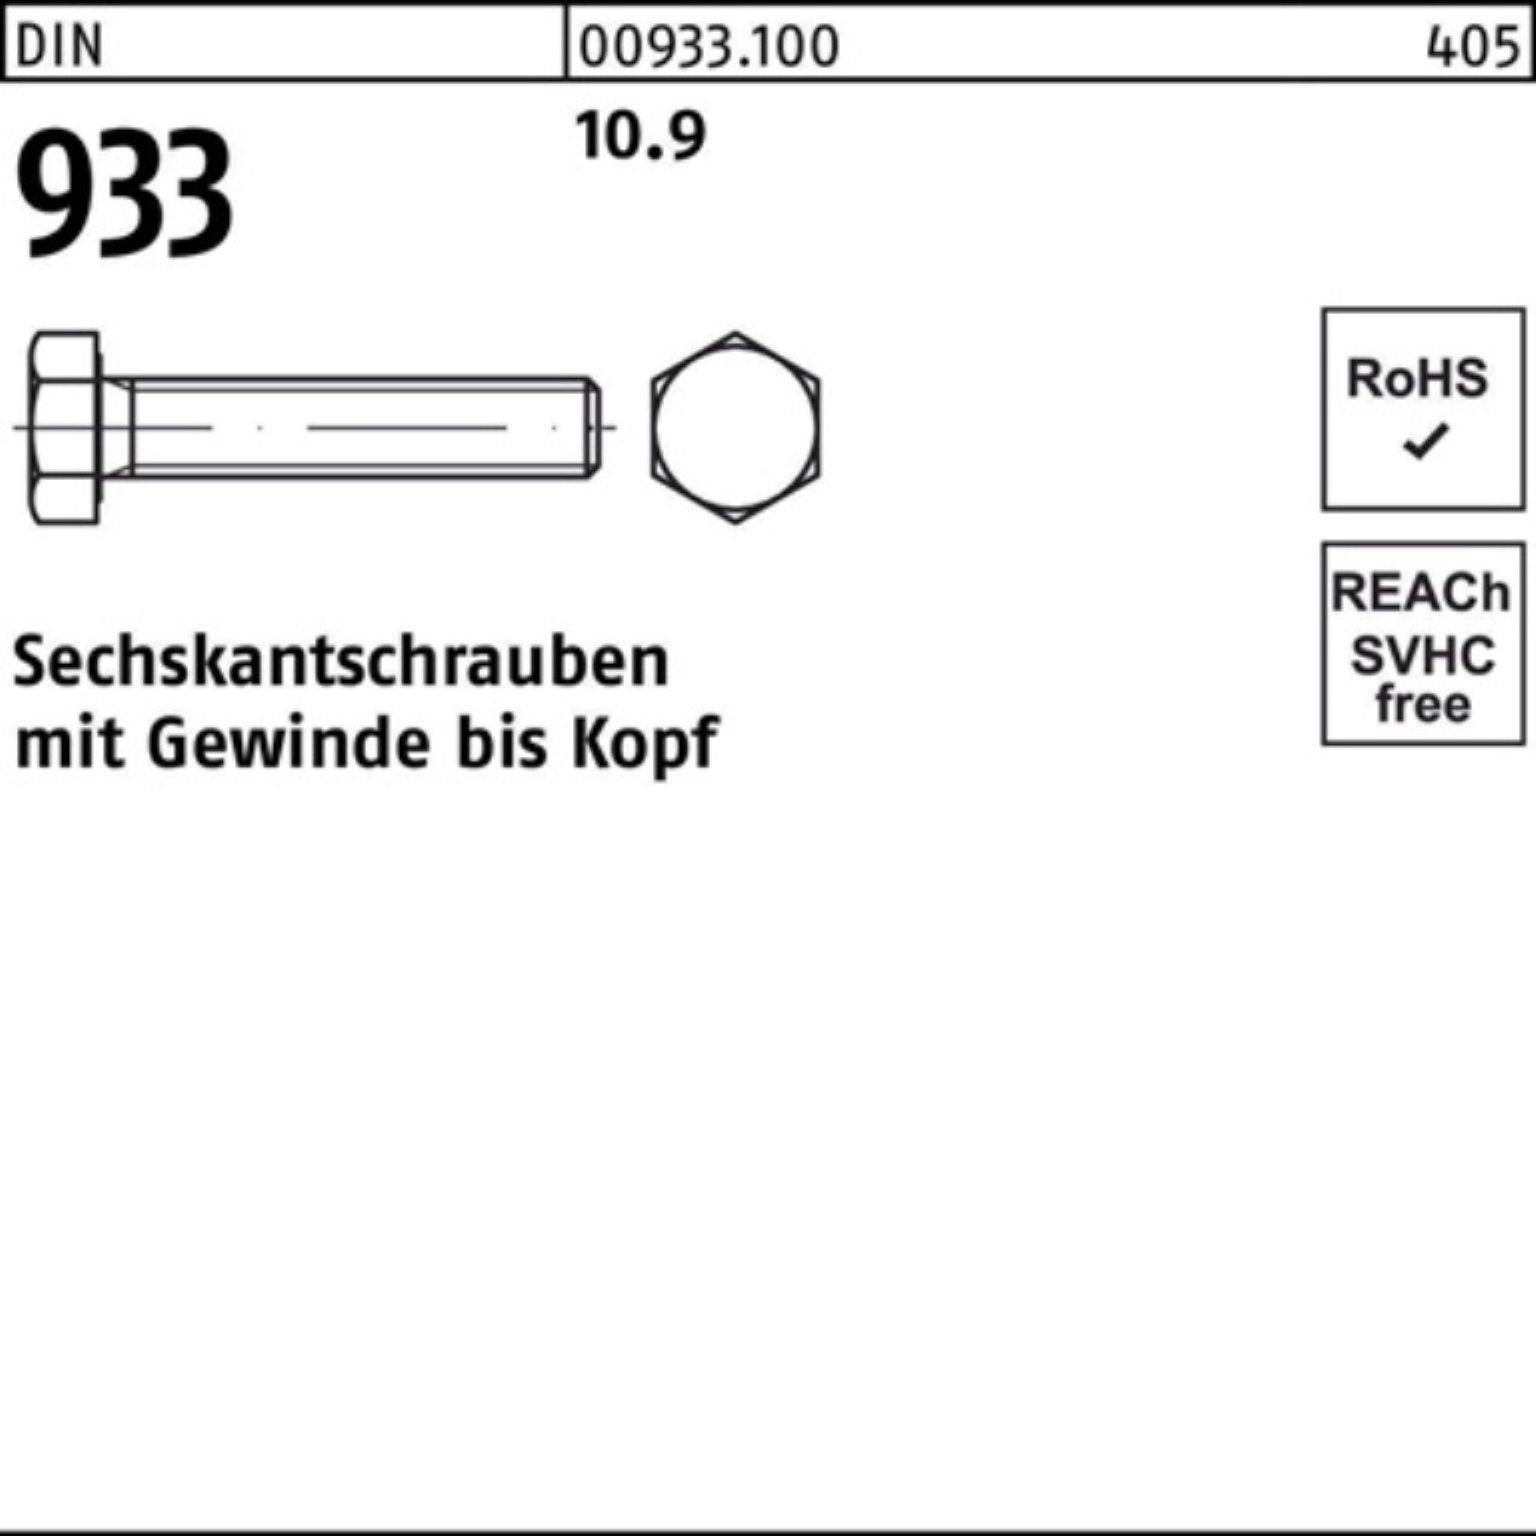 Reyher Sechskantschraube 100er Stück 100 93 60 Sechskantschraube Pack 10.9 DIN DIN VG M10x 933